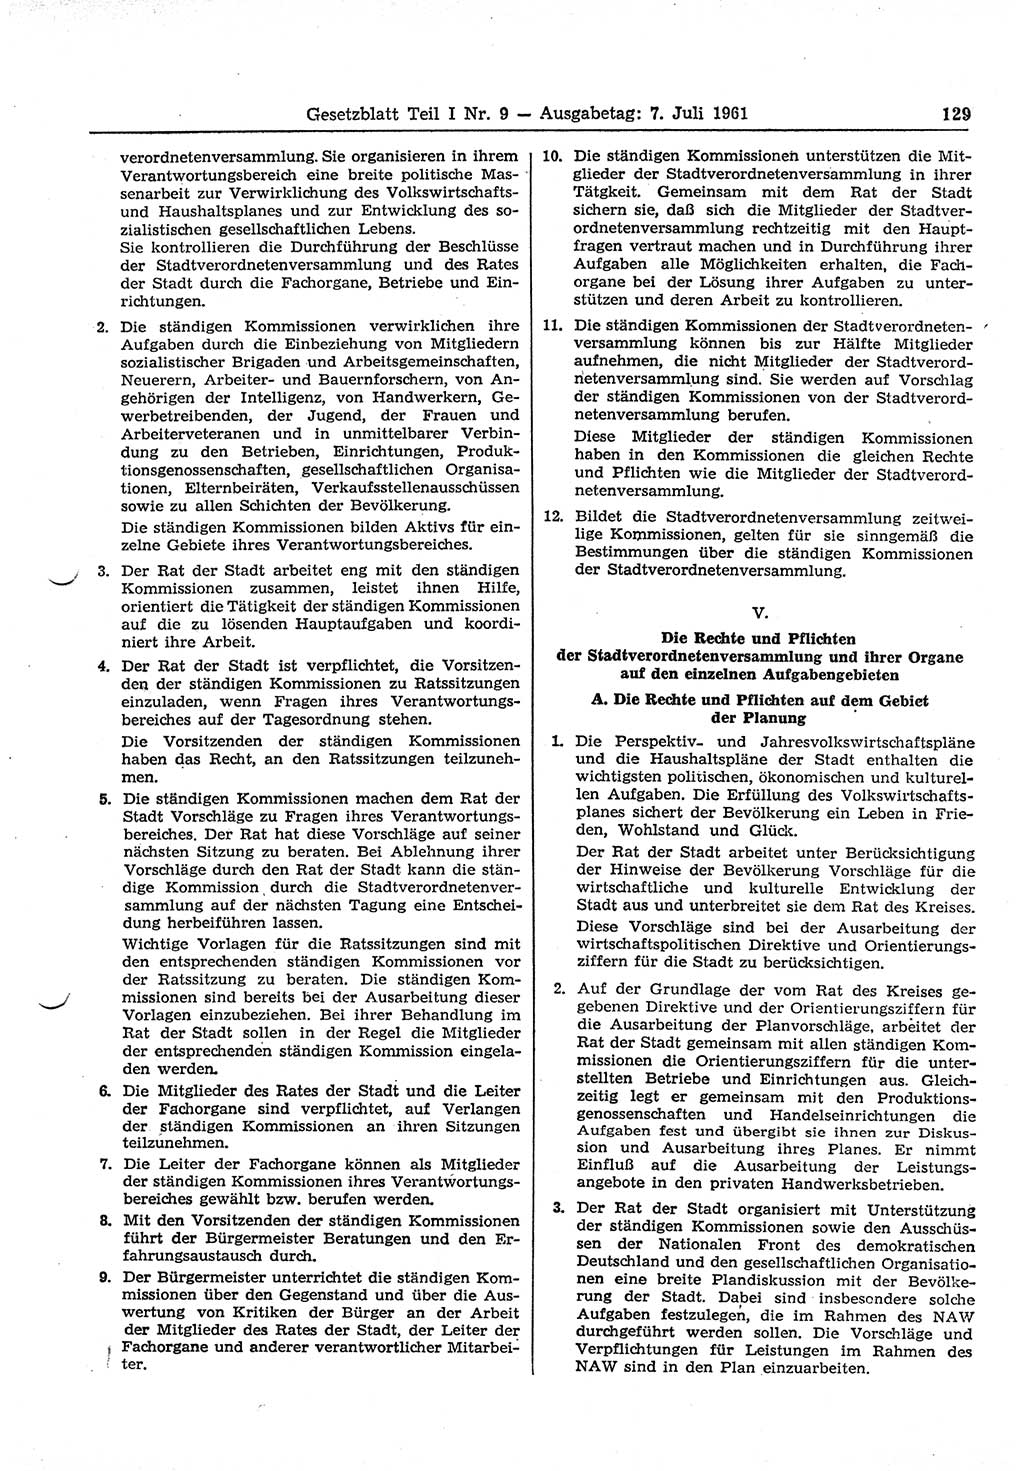 Gesetzblatt (GBl.) der Deutschen Demokratischen Republik (DDR) Teil Ⅰ 1961, Seite 129 (GBl. DDR Ⅰ 1961, S. 129)